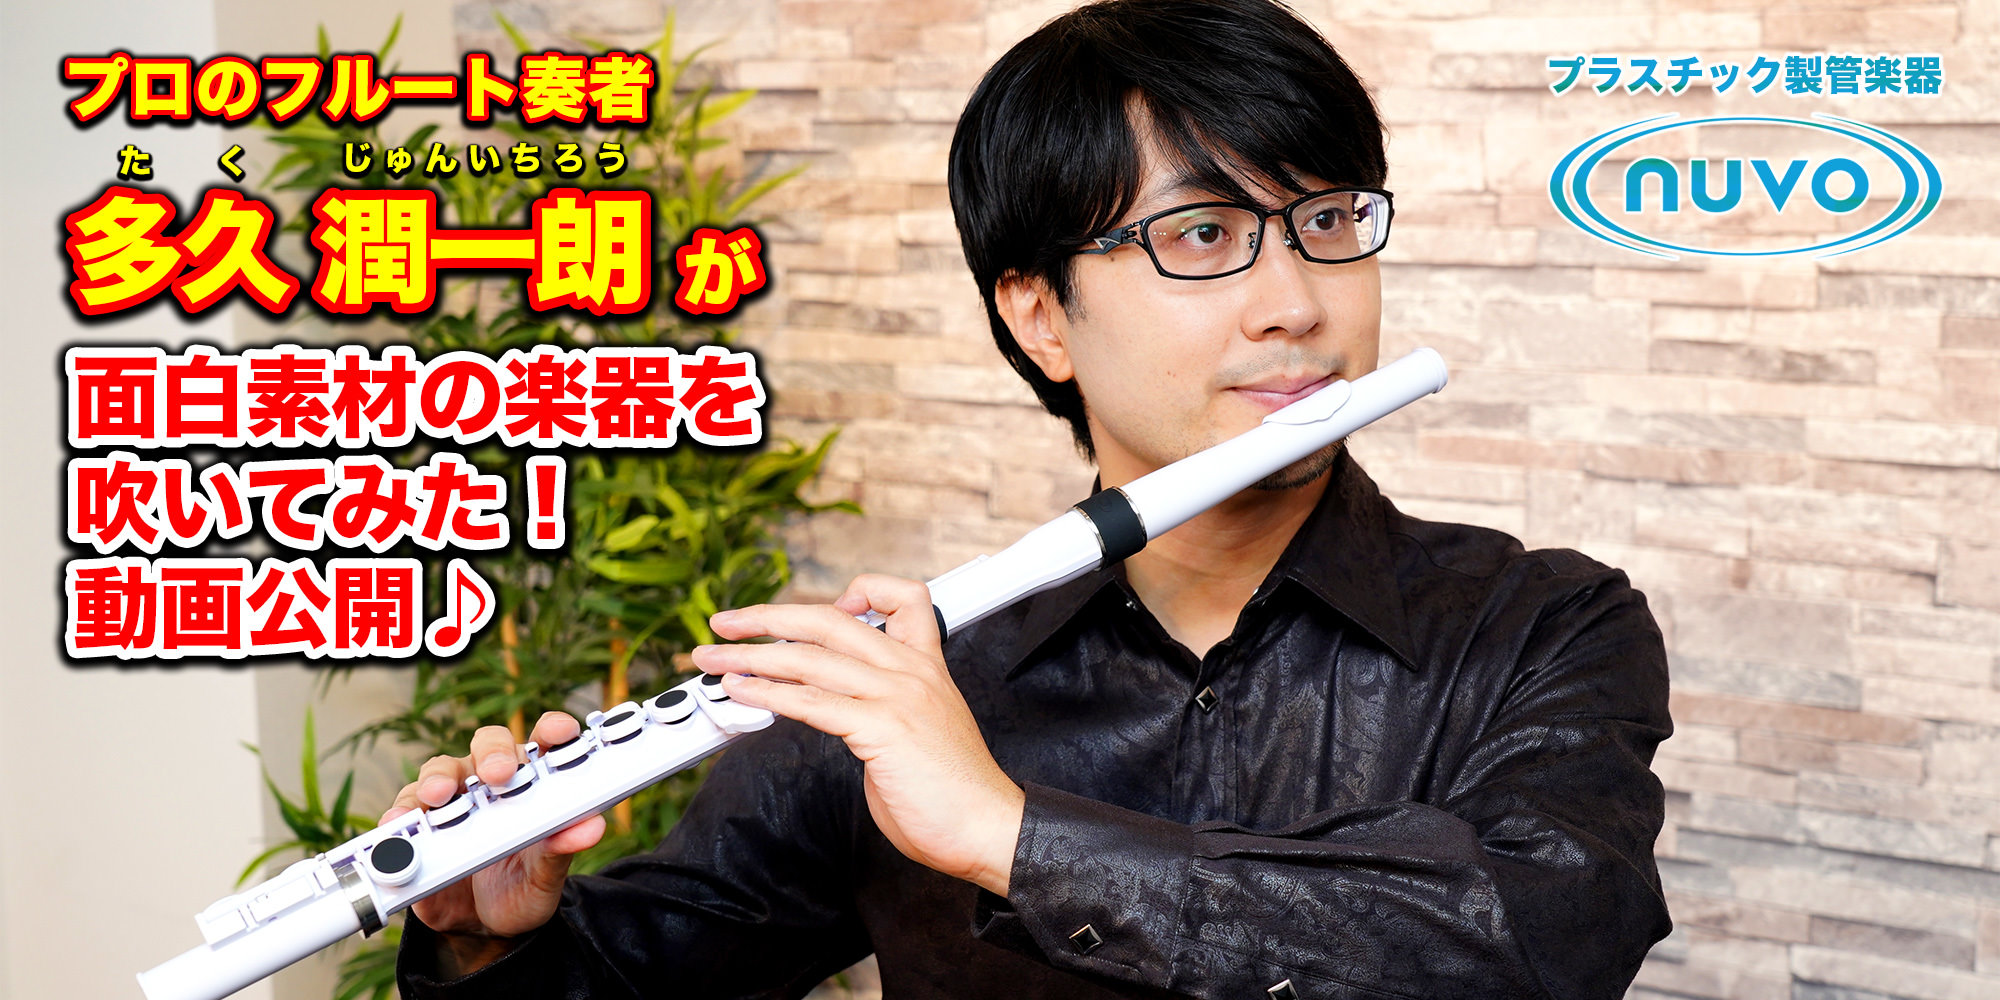 日本一のヨガYouTube「ビーライフ」のマリコが手がけるウェアが販売